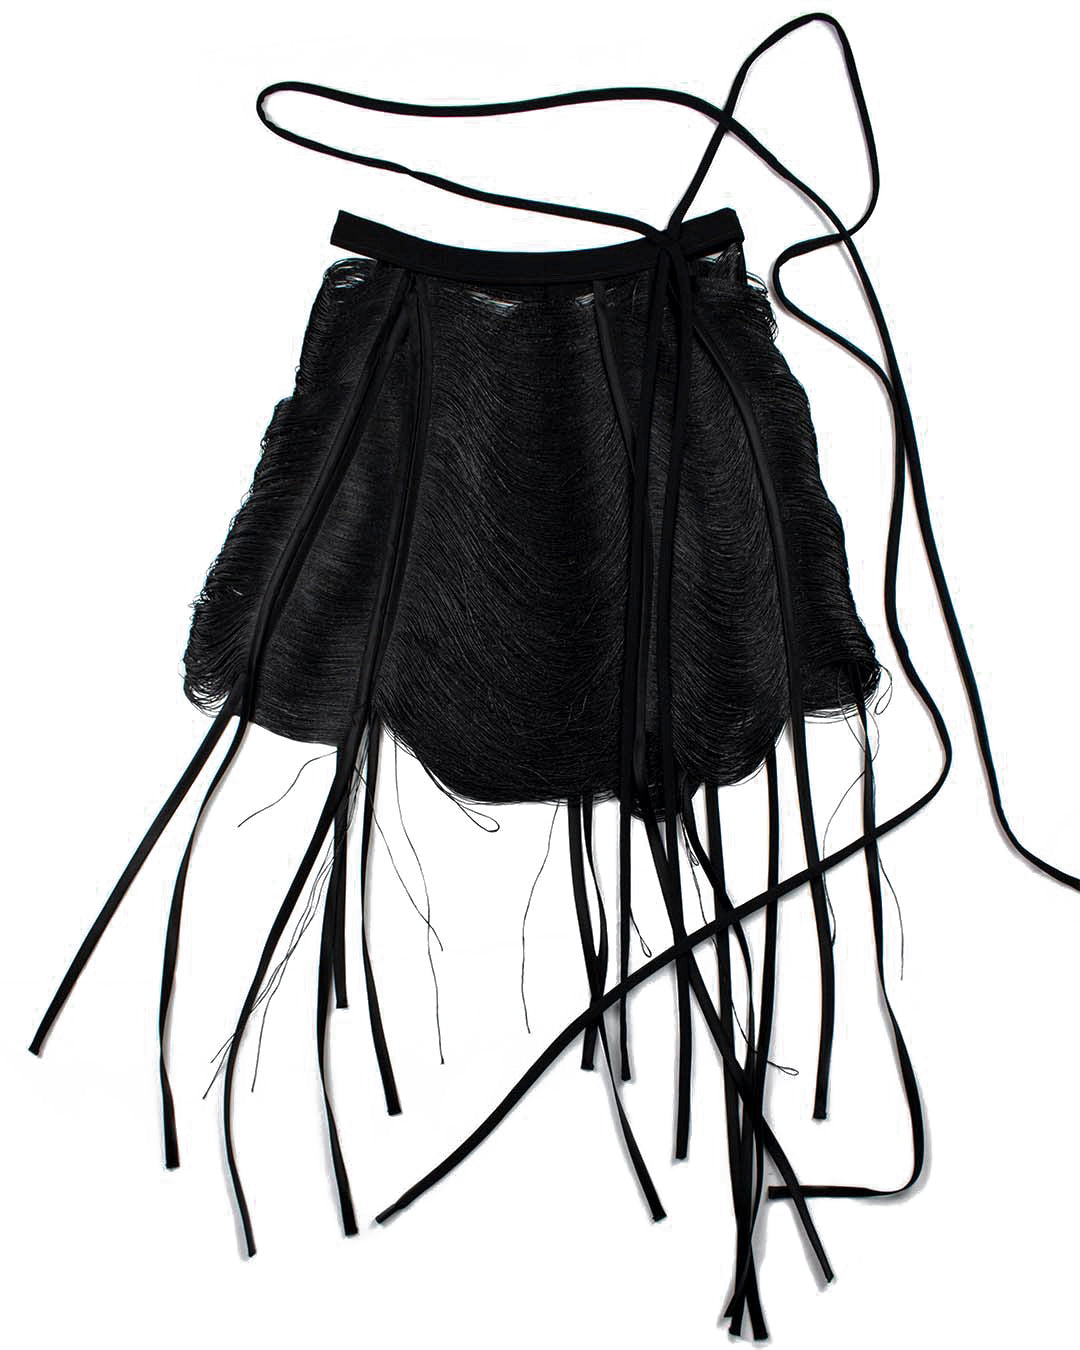 Mini Skirt - Black, White or Sand